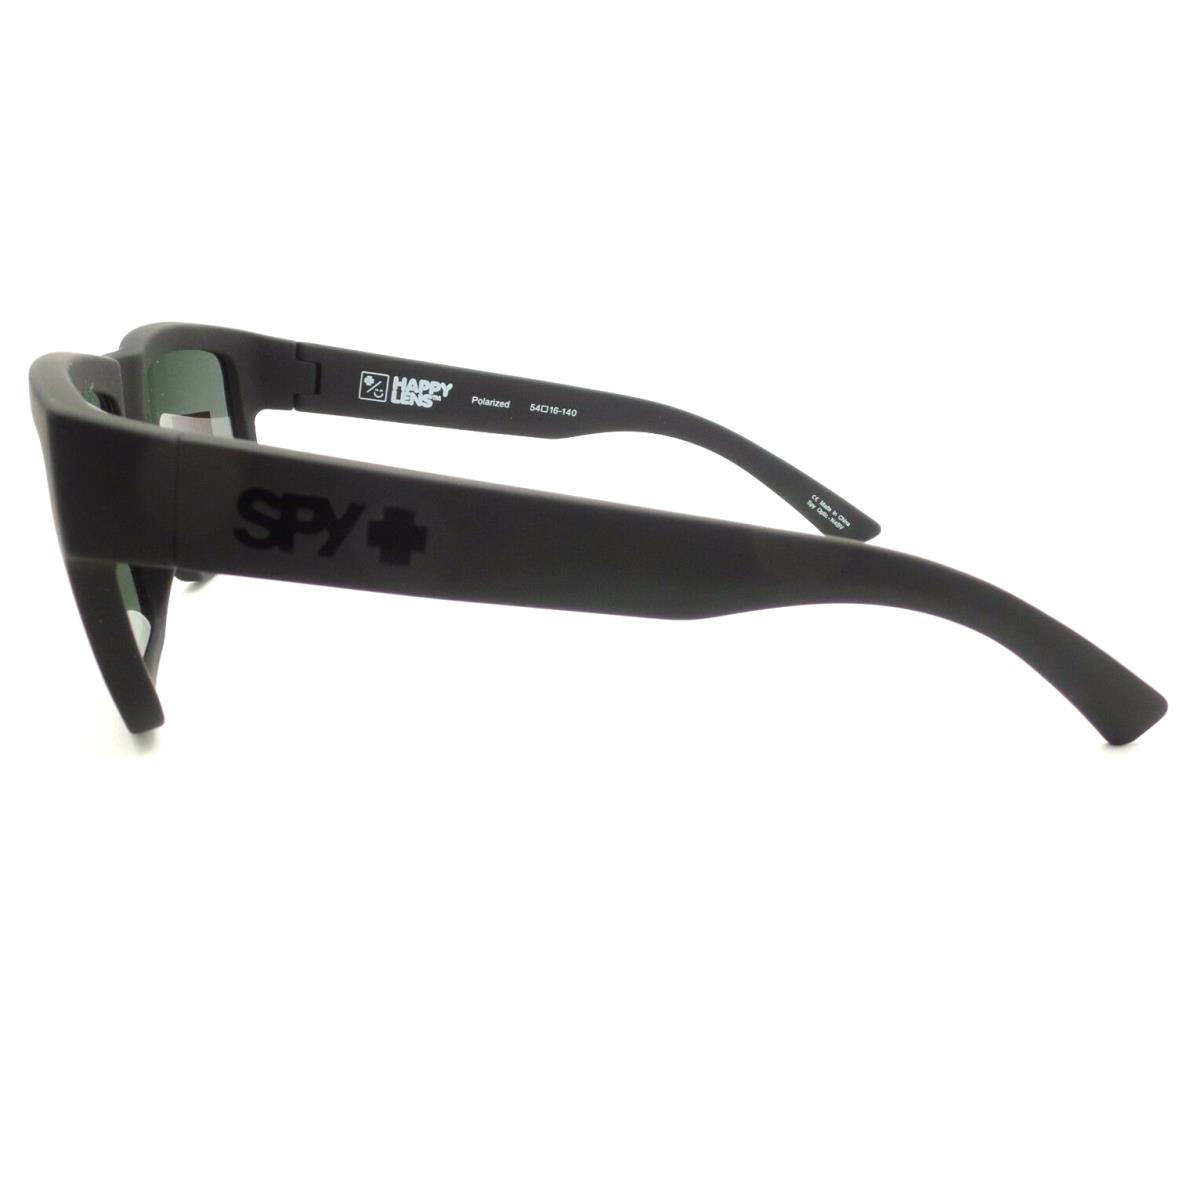 SPY Optics sunglasses Montana - Black Frame, Gray Lens